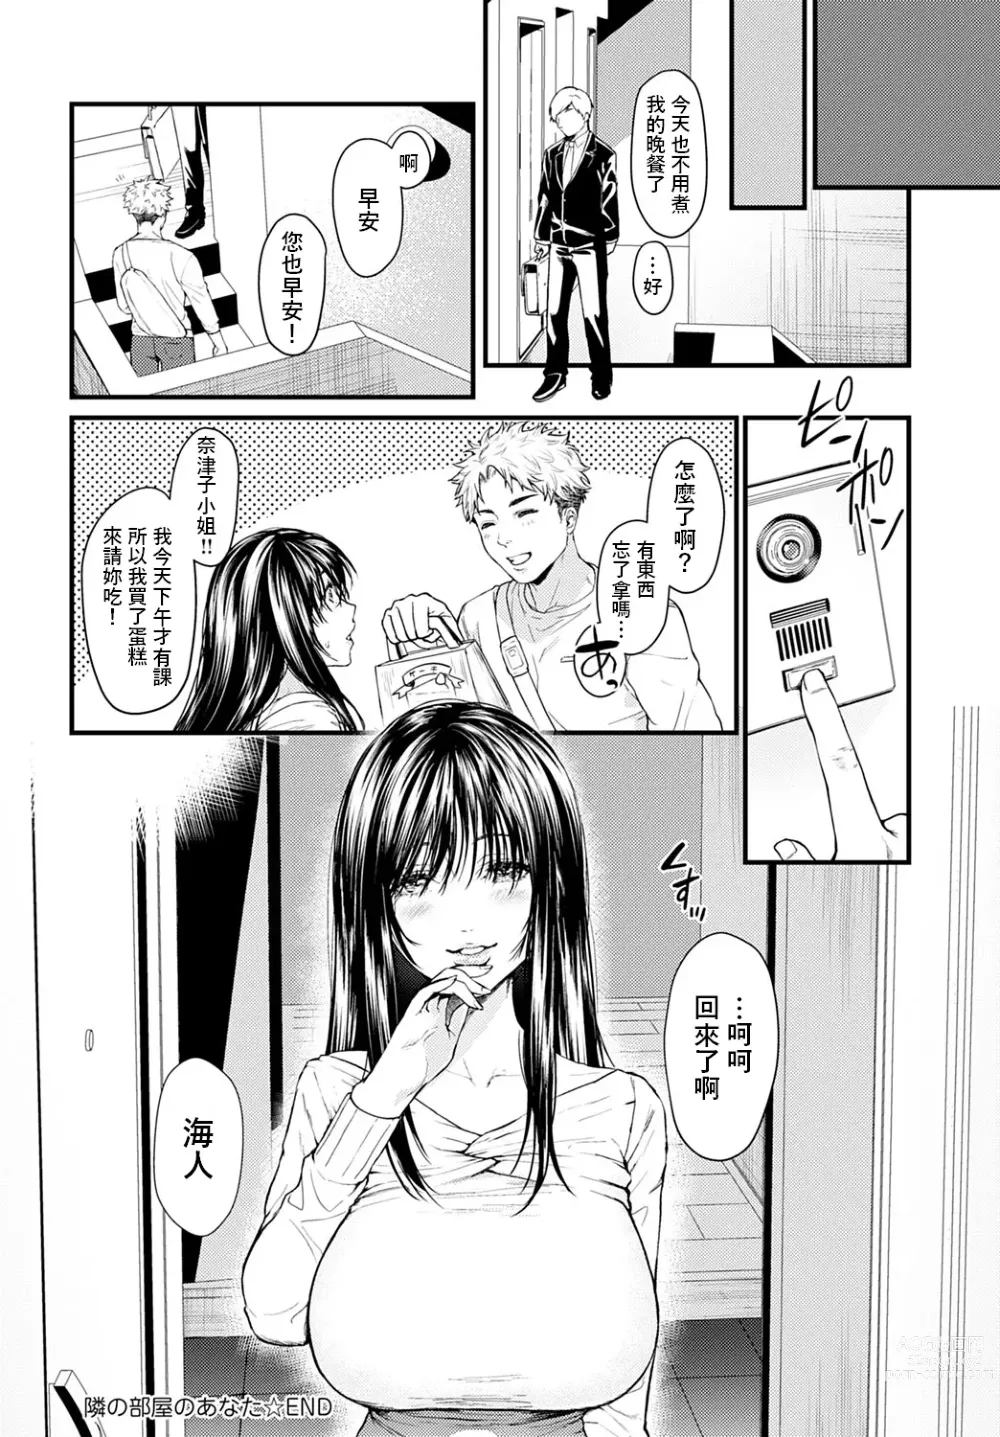 Page 26 of manga Tonari no Heya no Anata